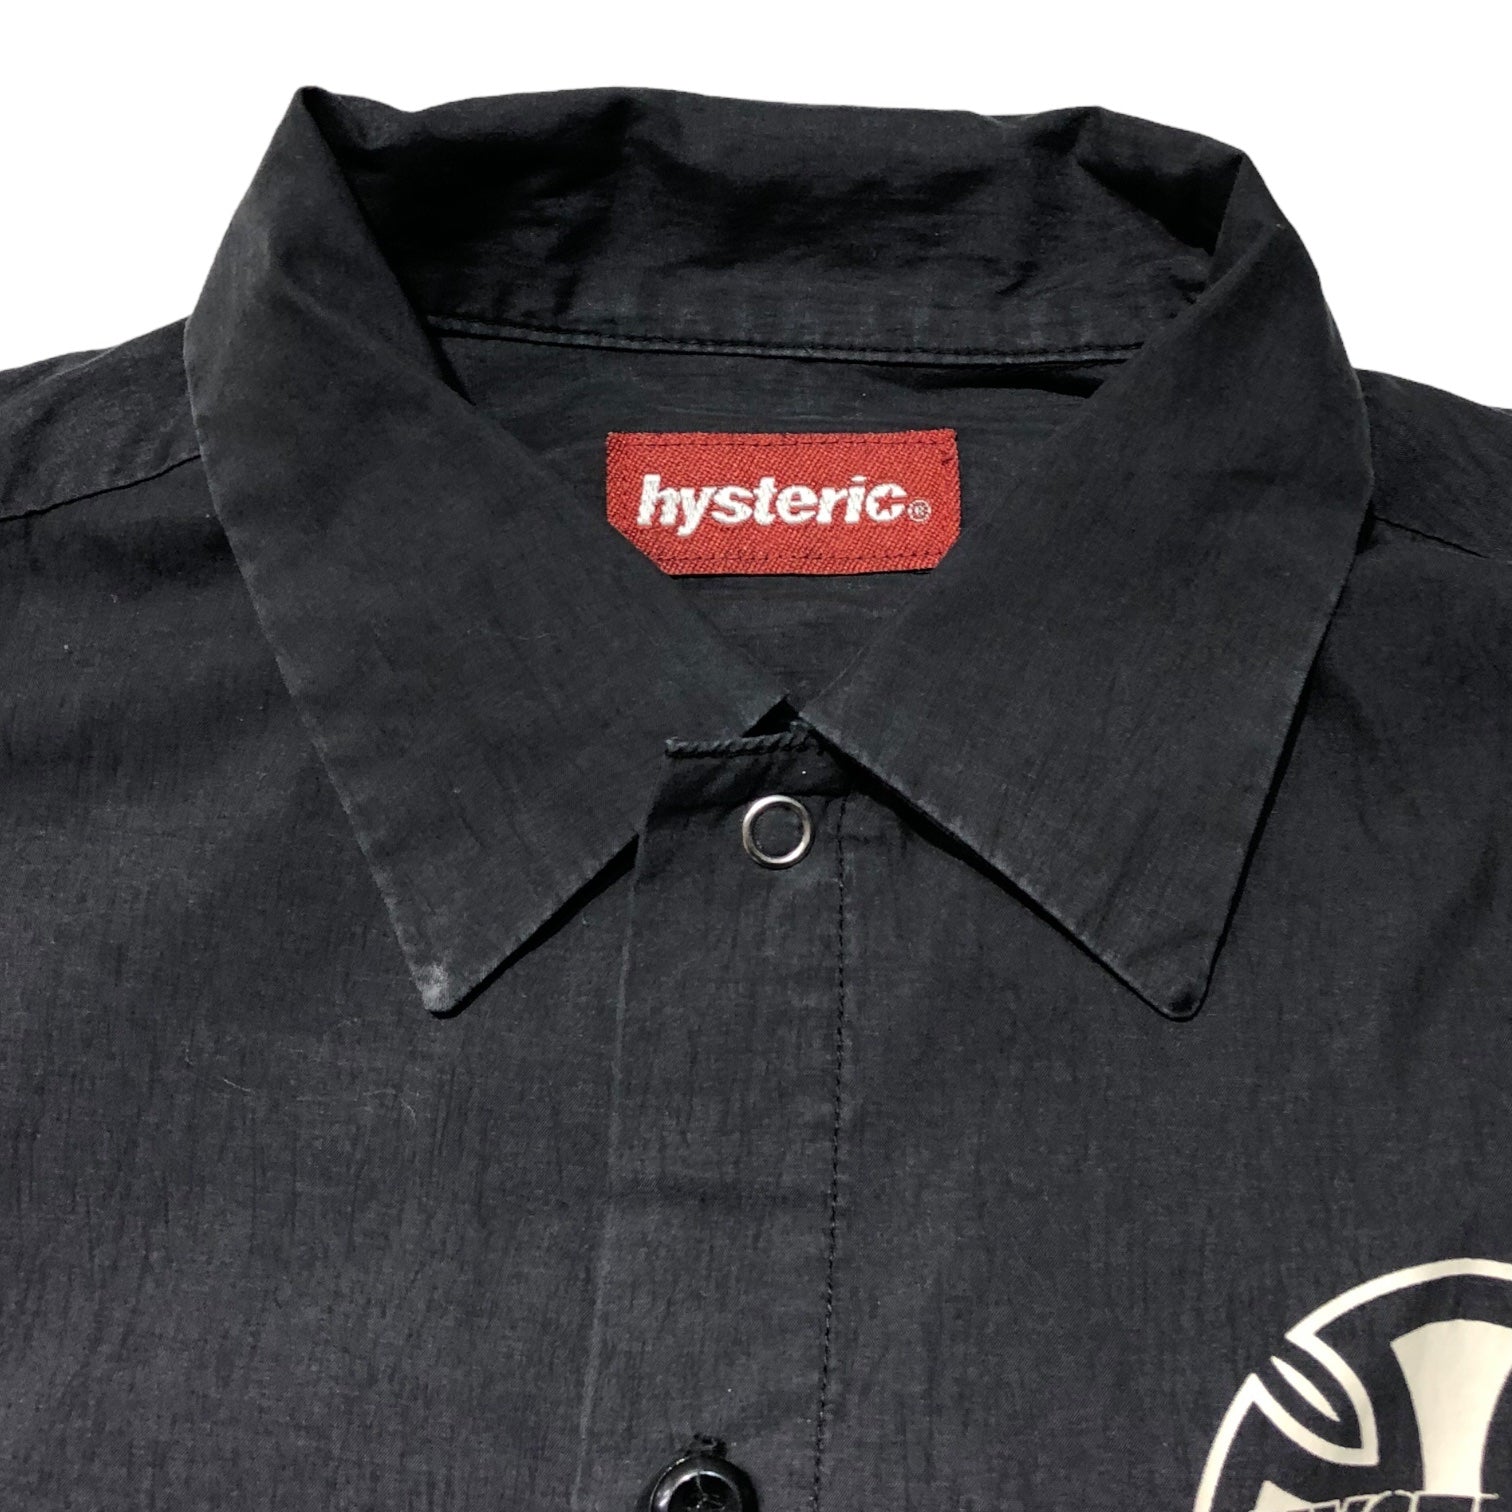 HYSTERIC GLAMOUR(ヒステリックグラマー) 00s cotton nylon graphic shirt/コットンナイロングラフィックシャツ/ヴィンテージ/稀少/初期/Y2K 2AH-9300 SIZE FREE ブラック